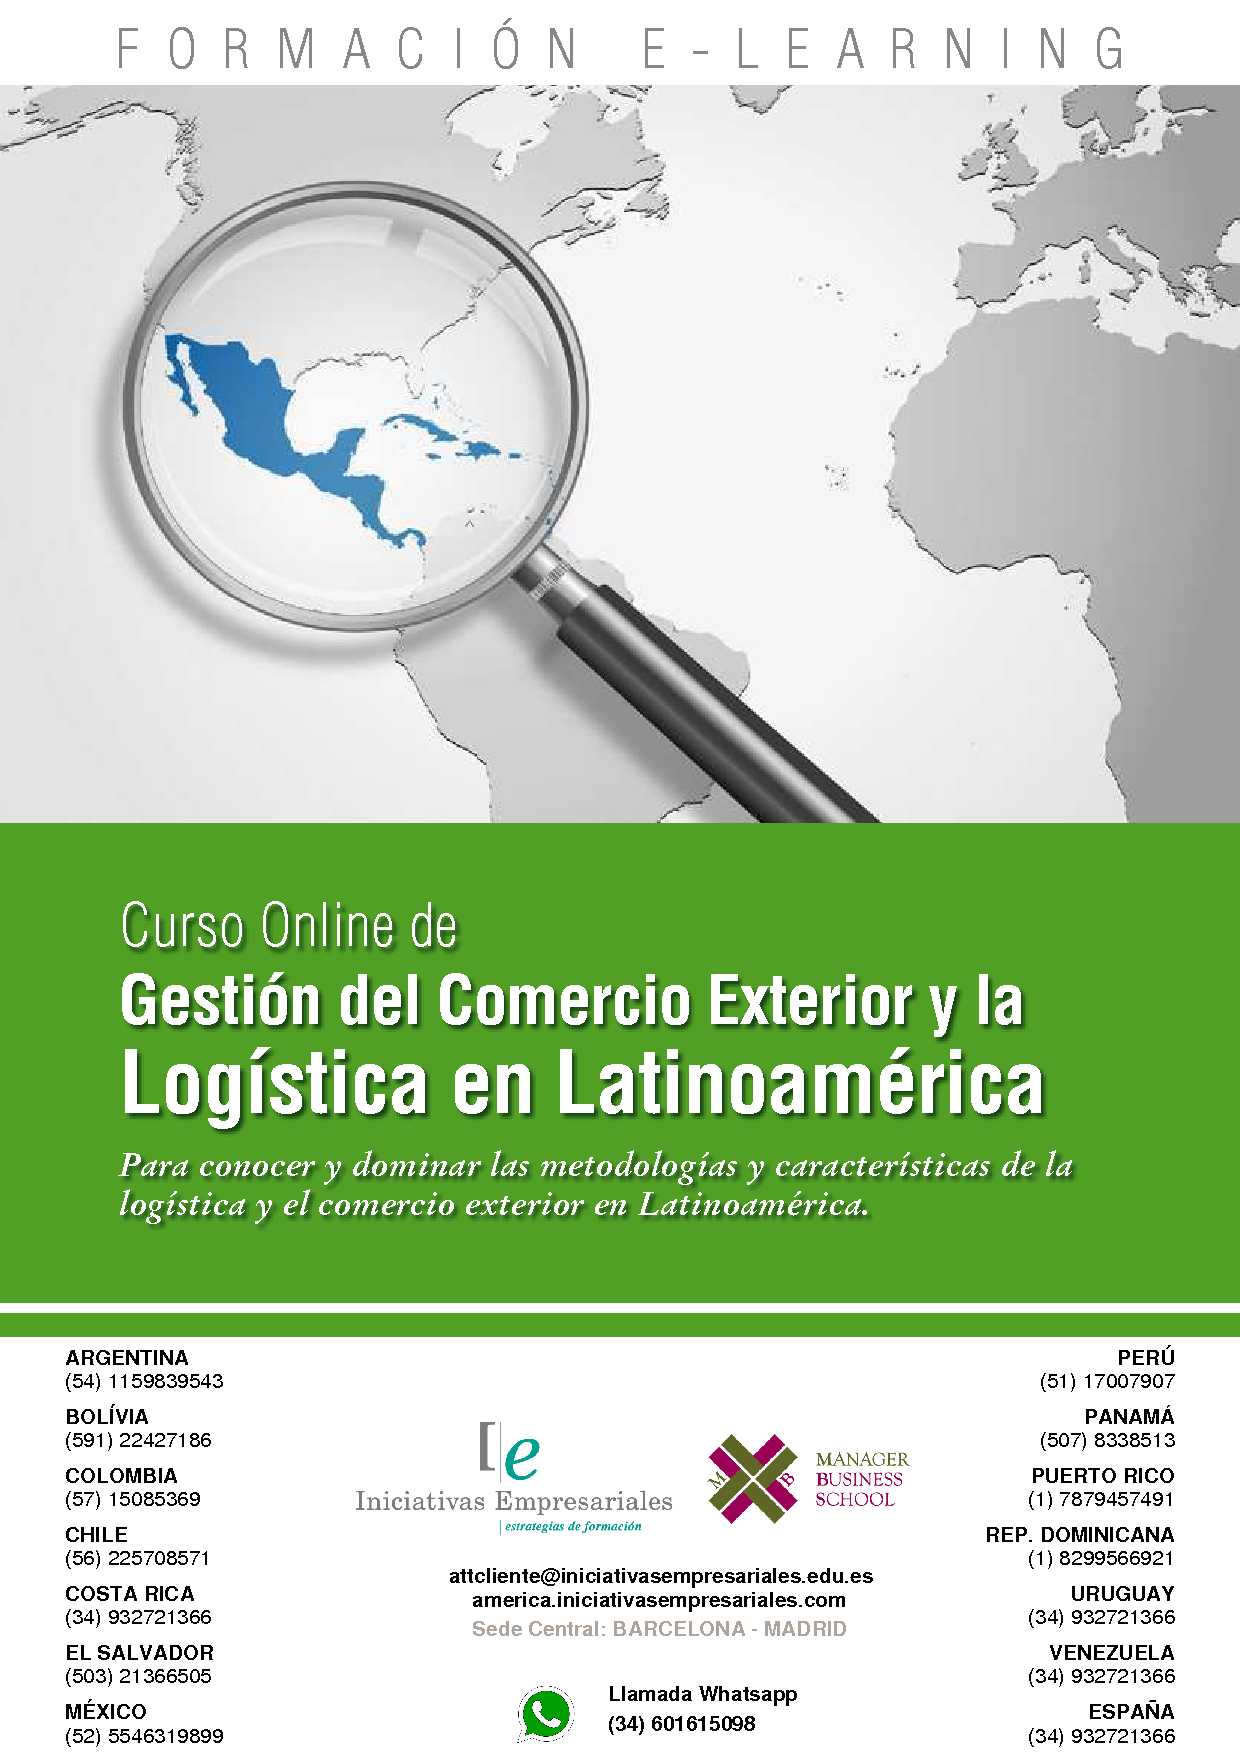 Gestión del Comercio Exterior y la Logística en Latinoamérica